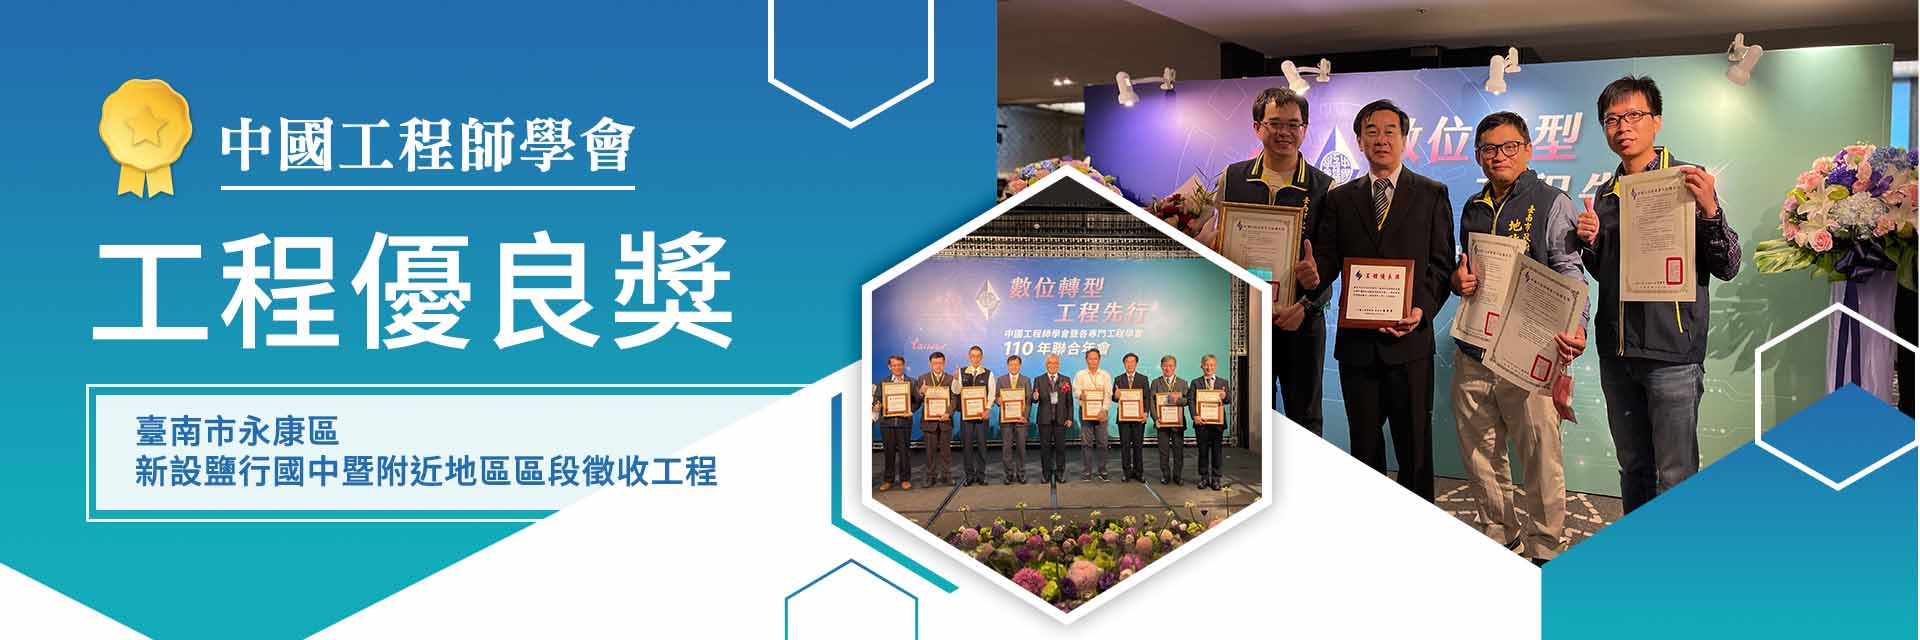 中國工程師學會「工程優良獎」